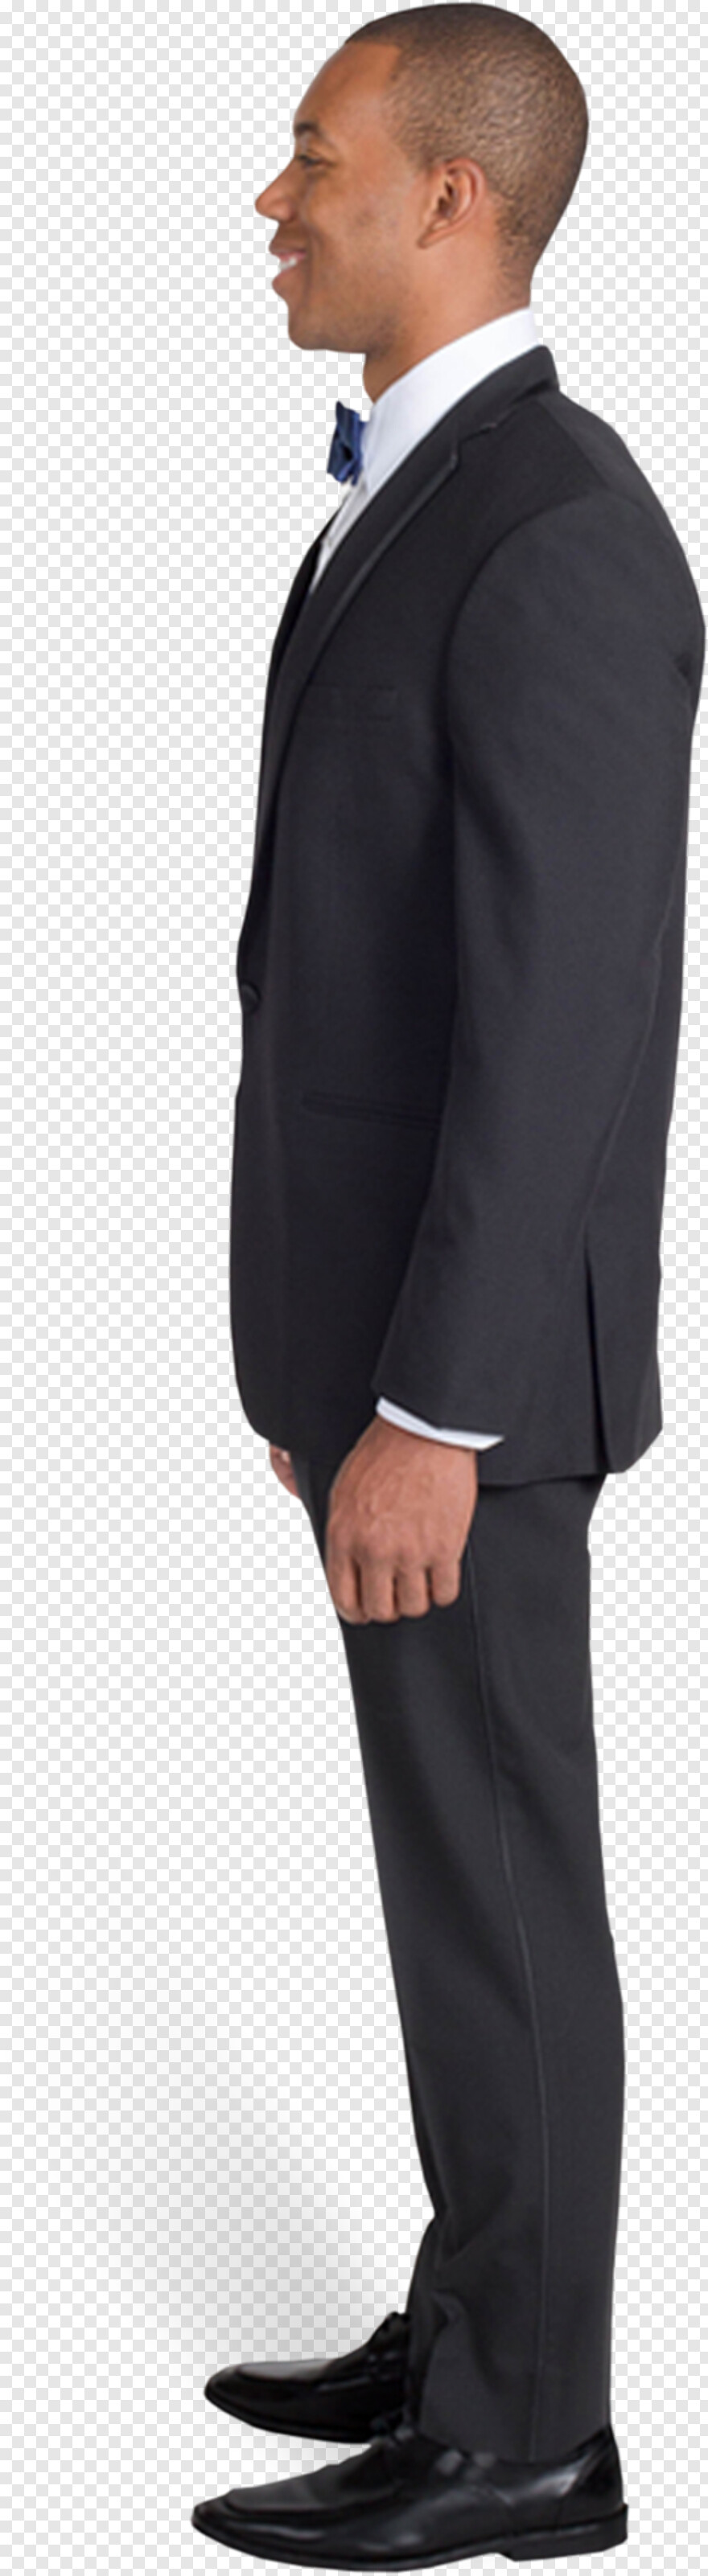 Tuxedo Free Icon Library - dress suit tuxedo roblox